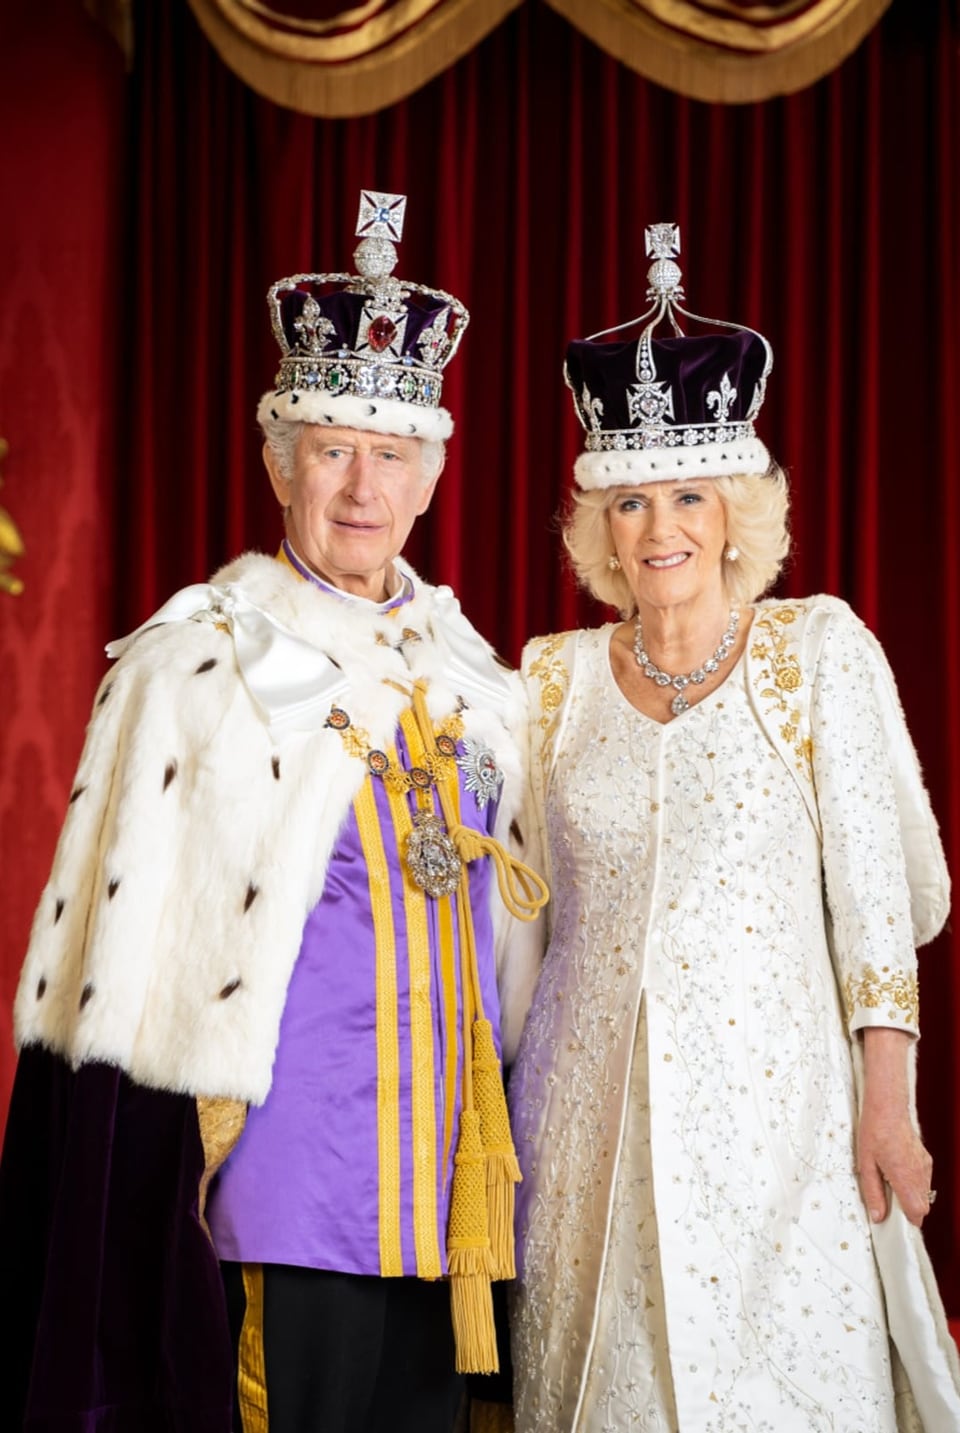 König Charles III. und Königin Camilla gemeinsam im Thronsaal des Schlosses.